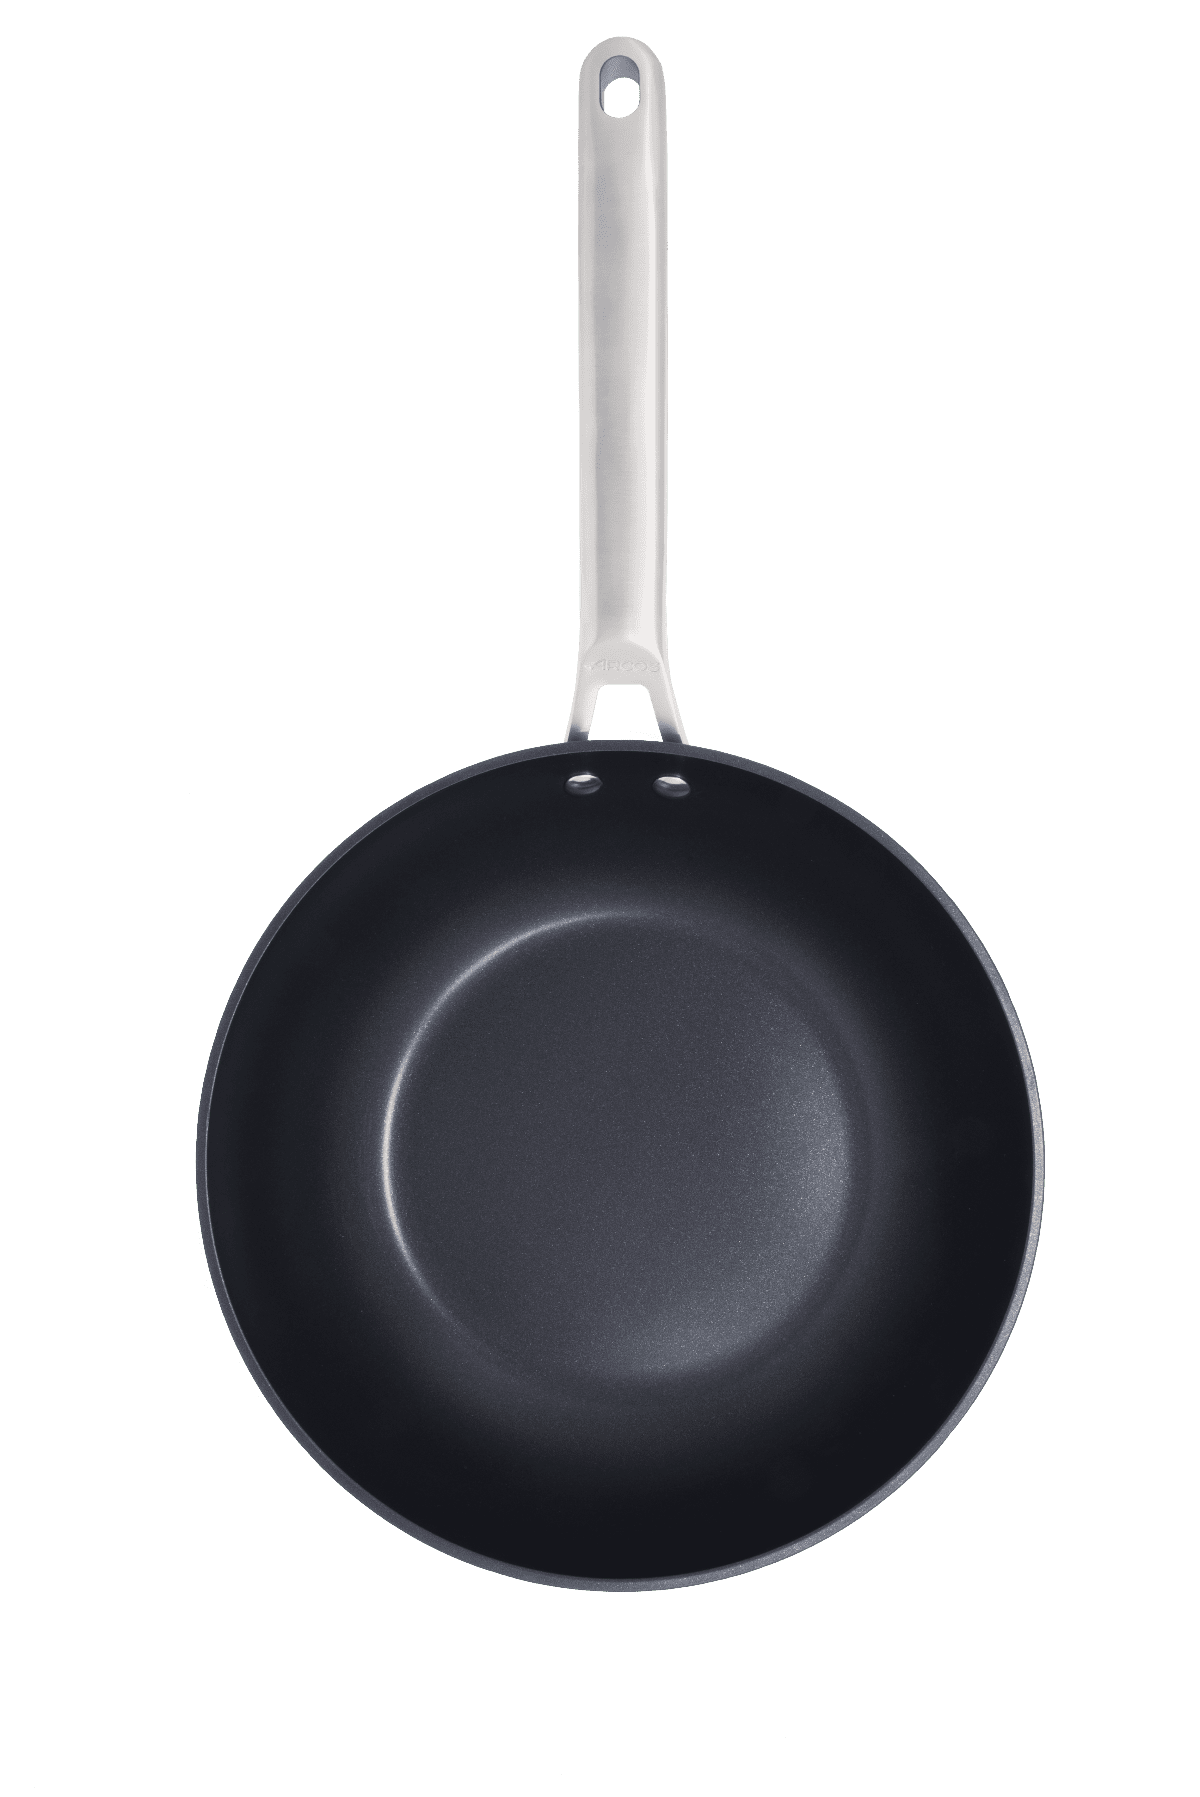 Cuchillo de mesa Arcos 802900 de 110 mm mango polipropileno crema